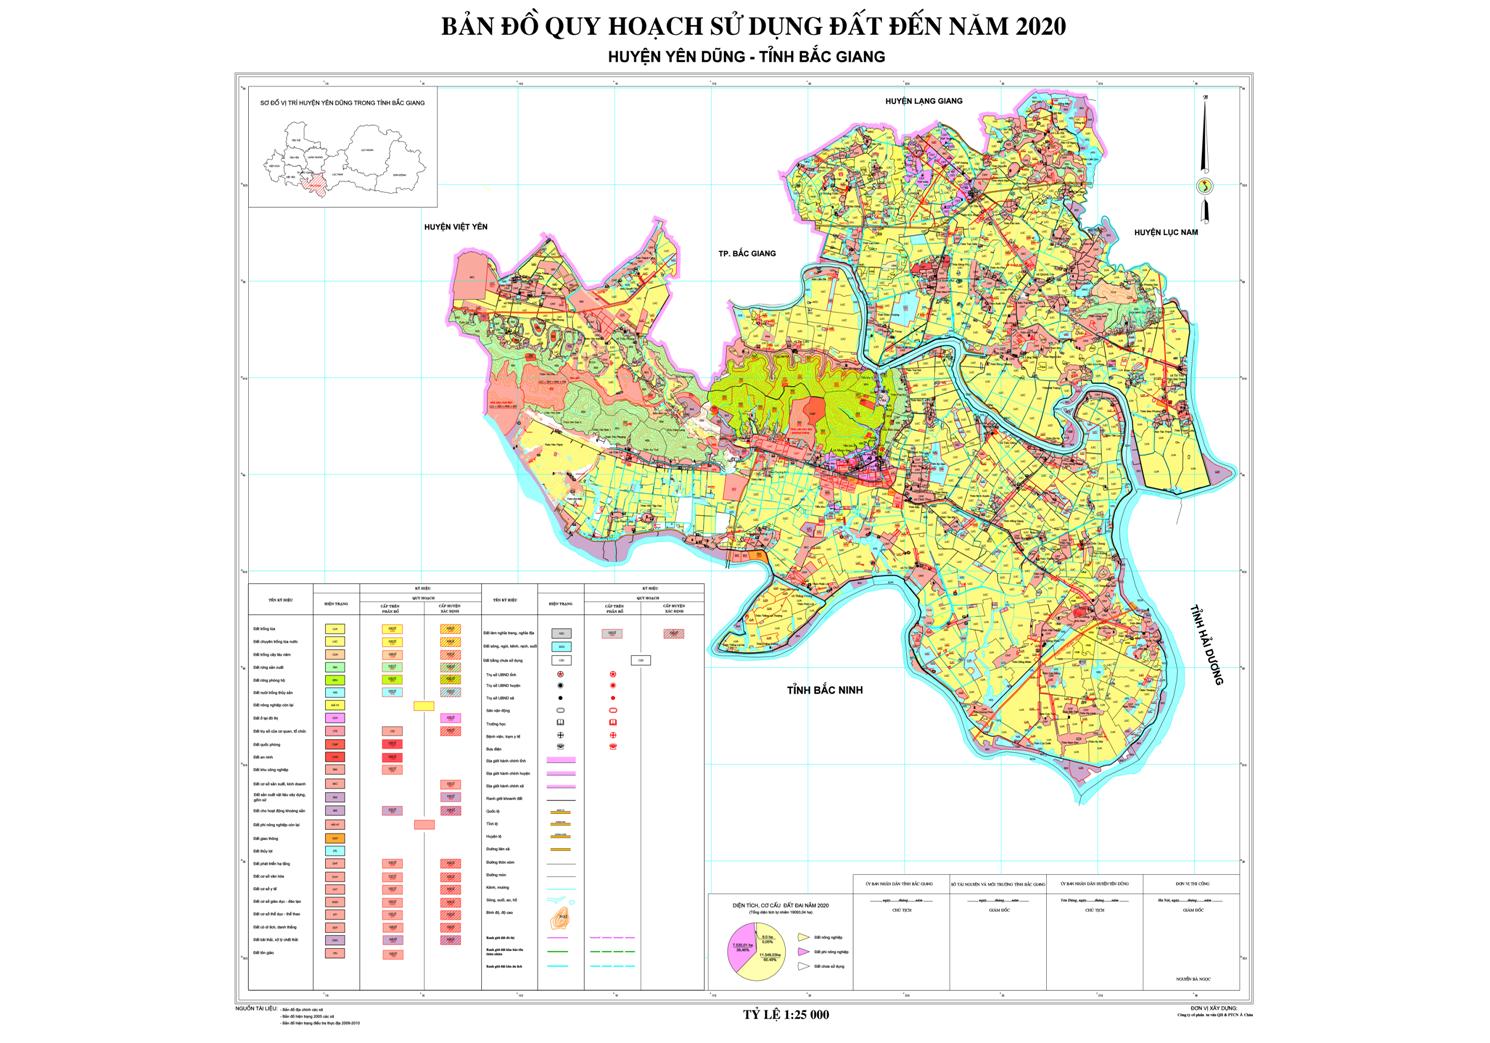 Bản đồ quy hoạch sử dụng đất huyện Yên Dũng đến năm 2020